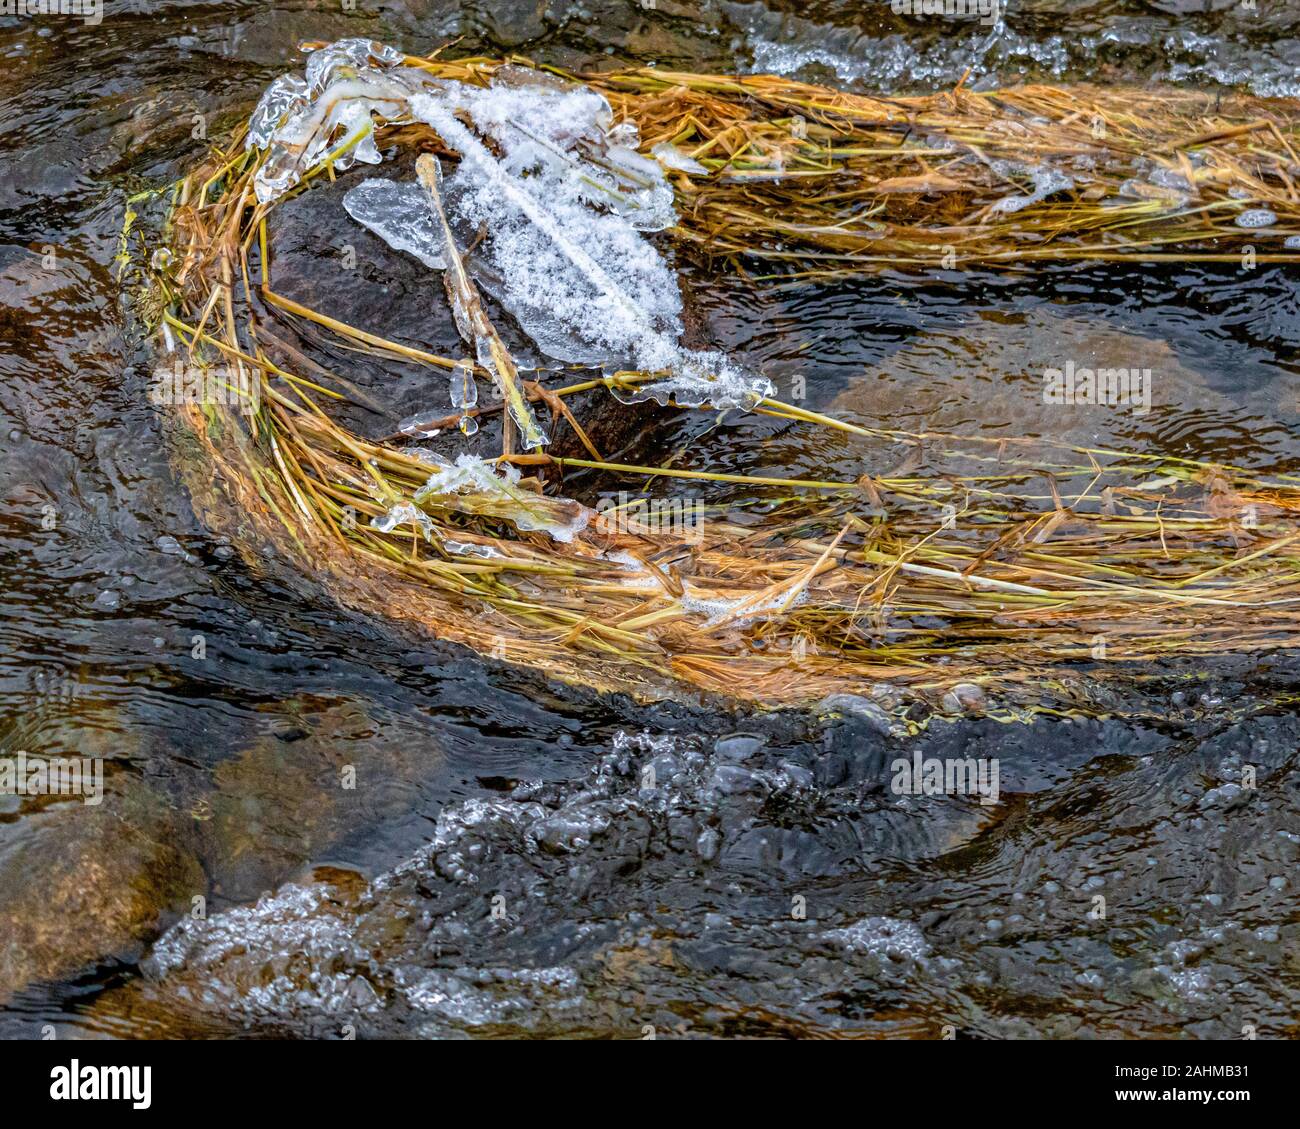 Dead erbacce sono catturati contro una roccia in un torrente che scorre. Il flusso di acqua li spinge lungo, ma rimangono curvato intorno alla pietra che ha una c Foto Stock